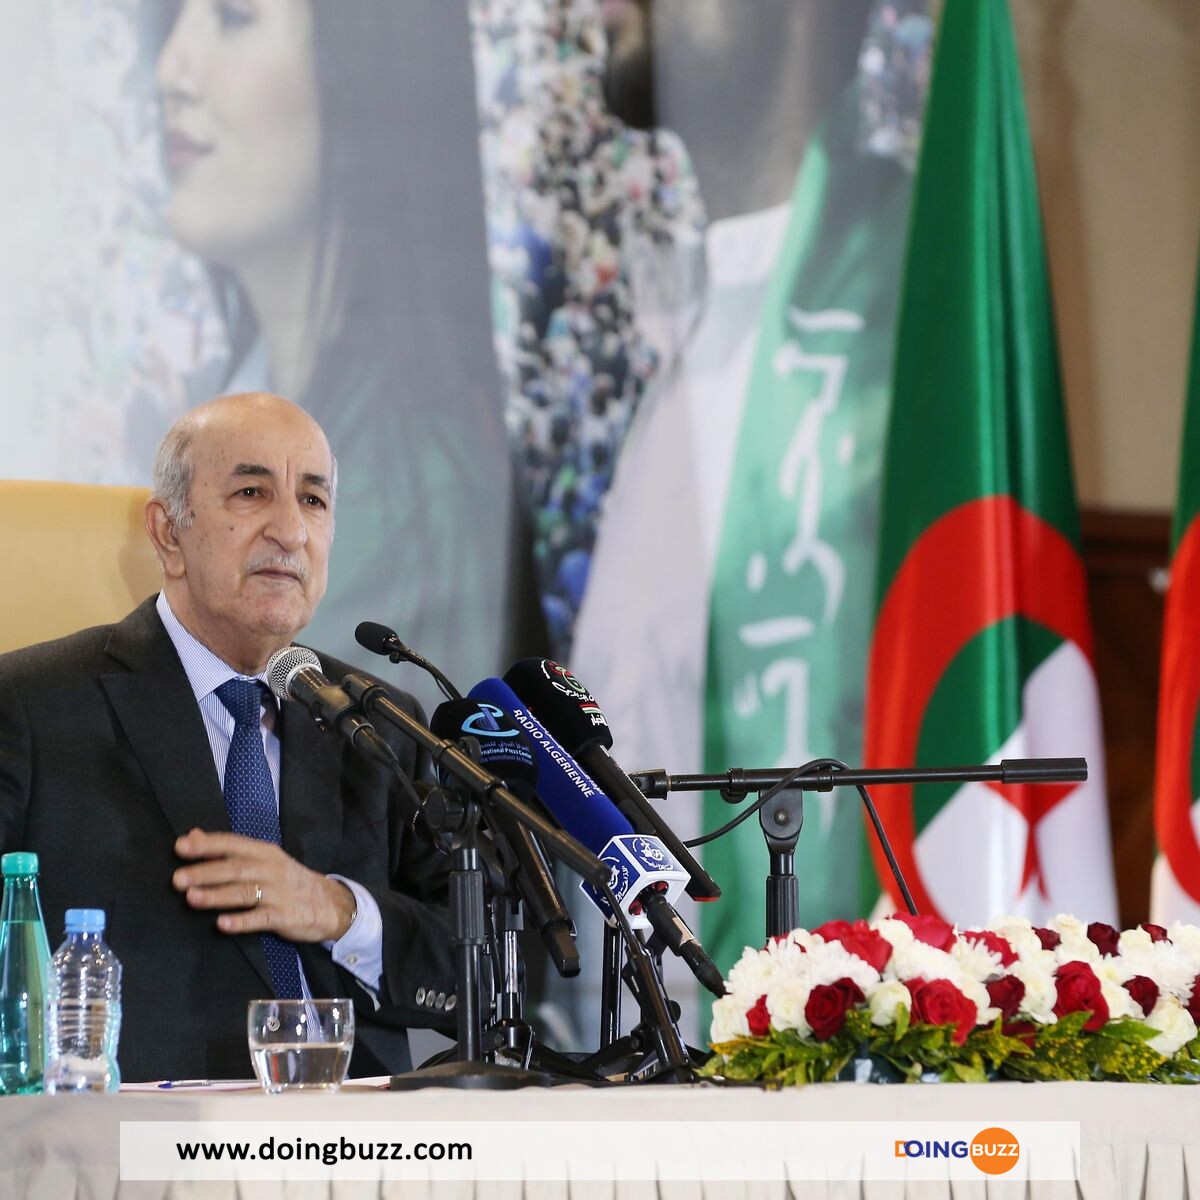 Élection Présidentielle Avancée En Algérie : Quels Enjeux Pour L'Avenir Politique Du Pays ?